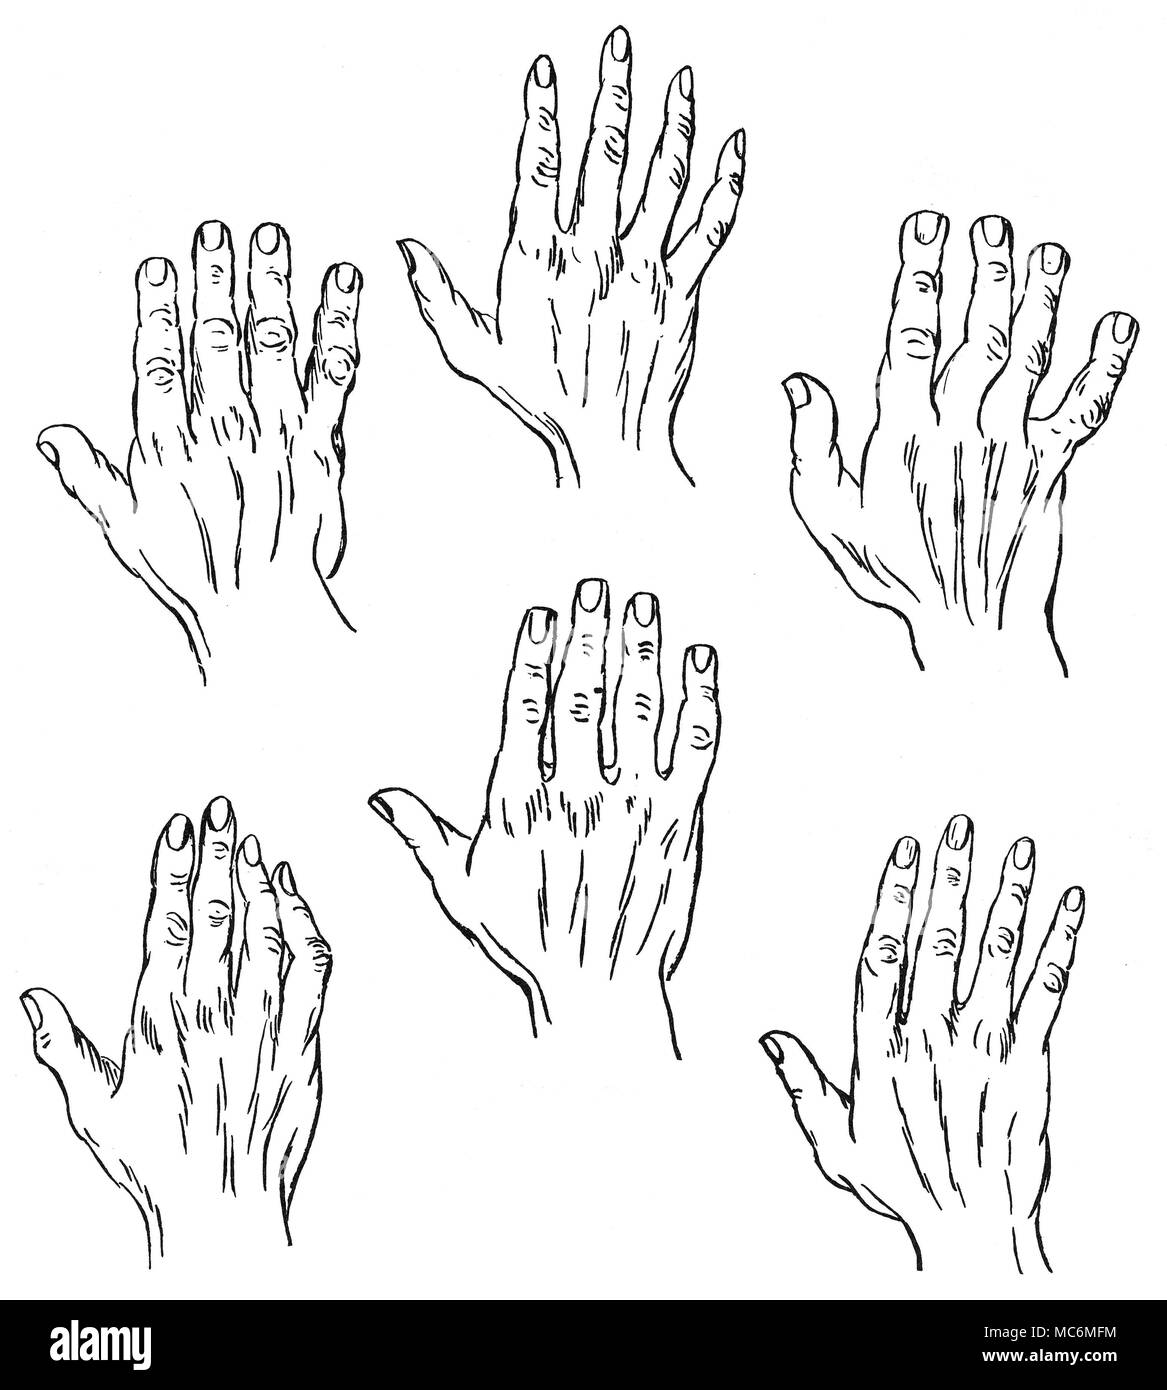 La Quiromancia - CHIROGNOMY el estudio de la forma de la mano, en su relación con la personalidad, se denomina Chirognomy, y es una importante división de quiromancia. Entre los muchos intentos para clasificar los tipos de mano, es la que propone el palmista francés, Casimir Stanislas d'Arpentigny (nacido en 1798). D'Arpentigny propuesto seis tipos básicos de mano, junto con el séptimo, que incluía elementos de dos o más de estos tipos. Los dibujos ilustran aquí (arriba a la izquierda); el elemental, el psíquico, el Espatulado y (abajo a la izquierda); El Knotty (o filosófica), la plaza, y la cónica. De D'Arpentigny, L Foto de stock